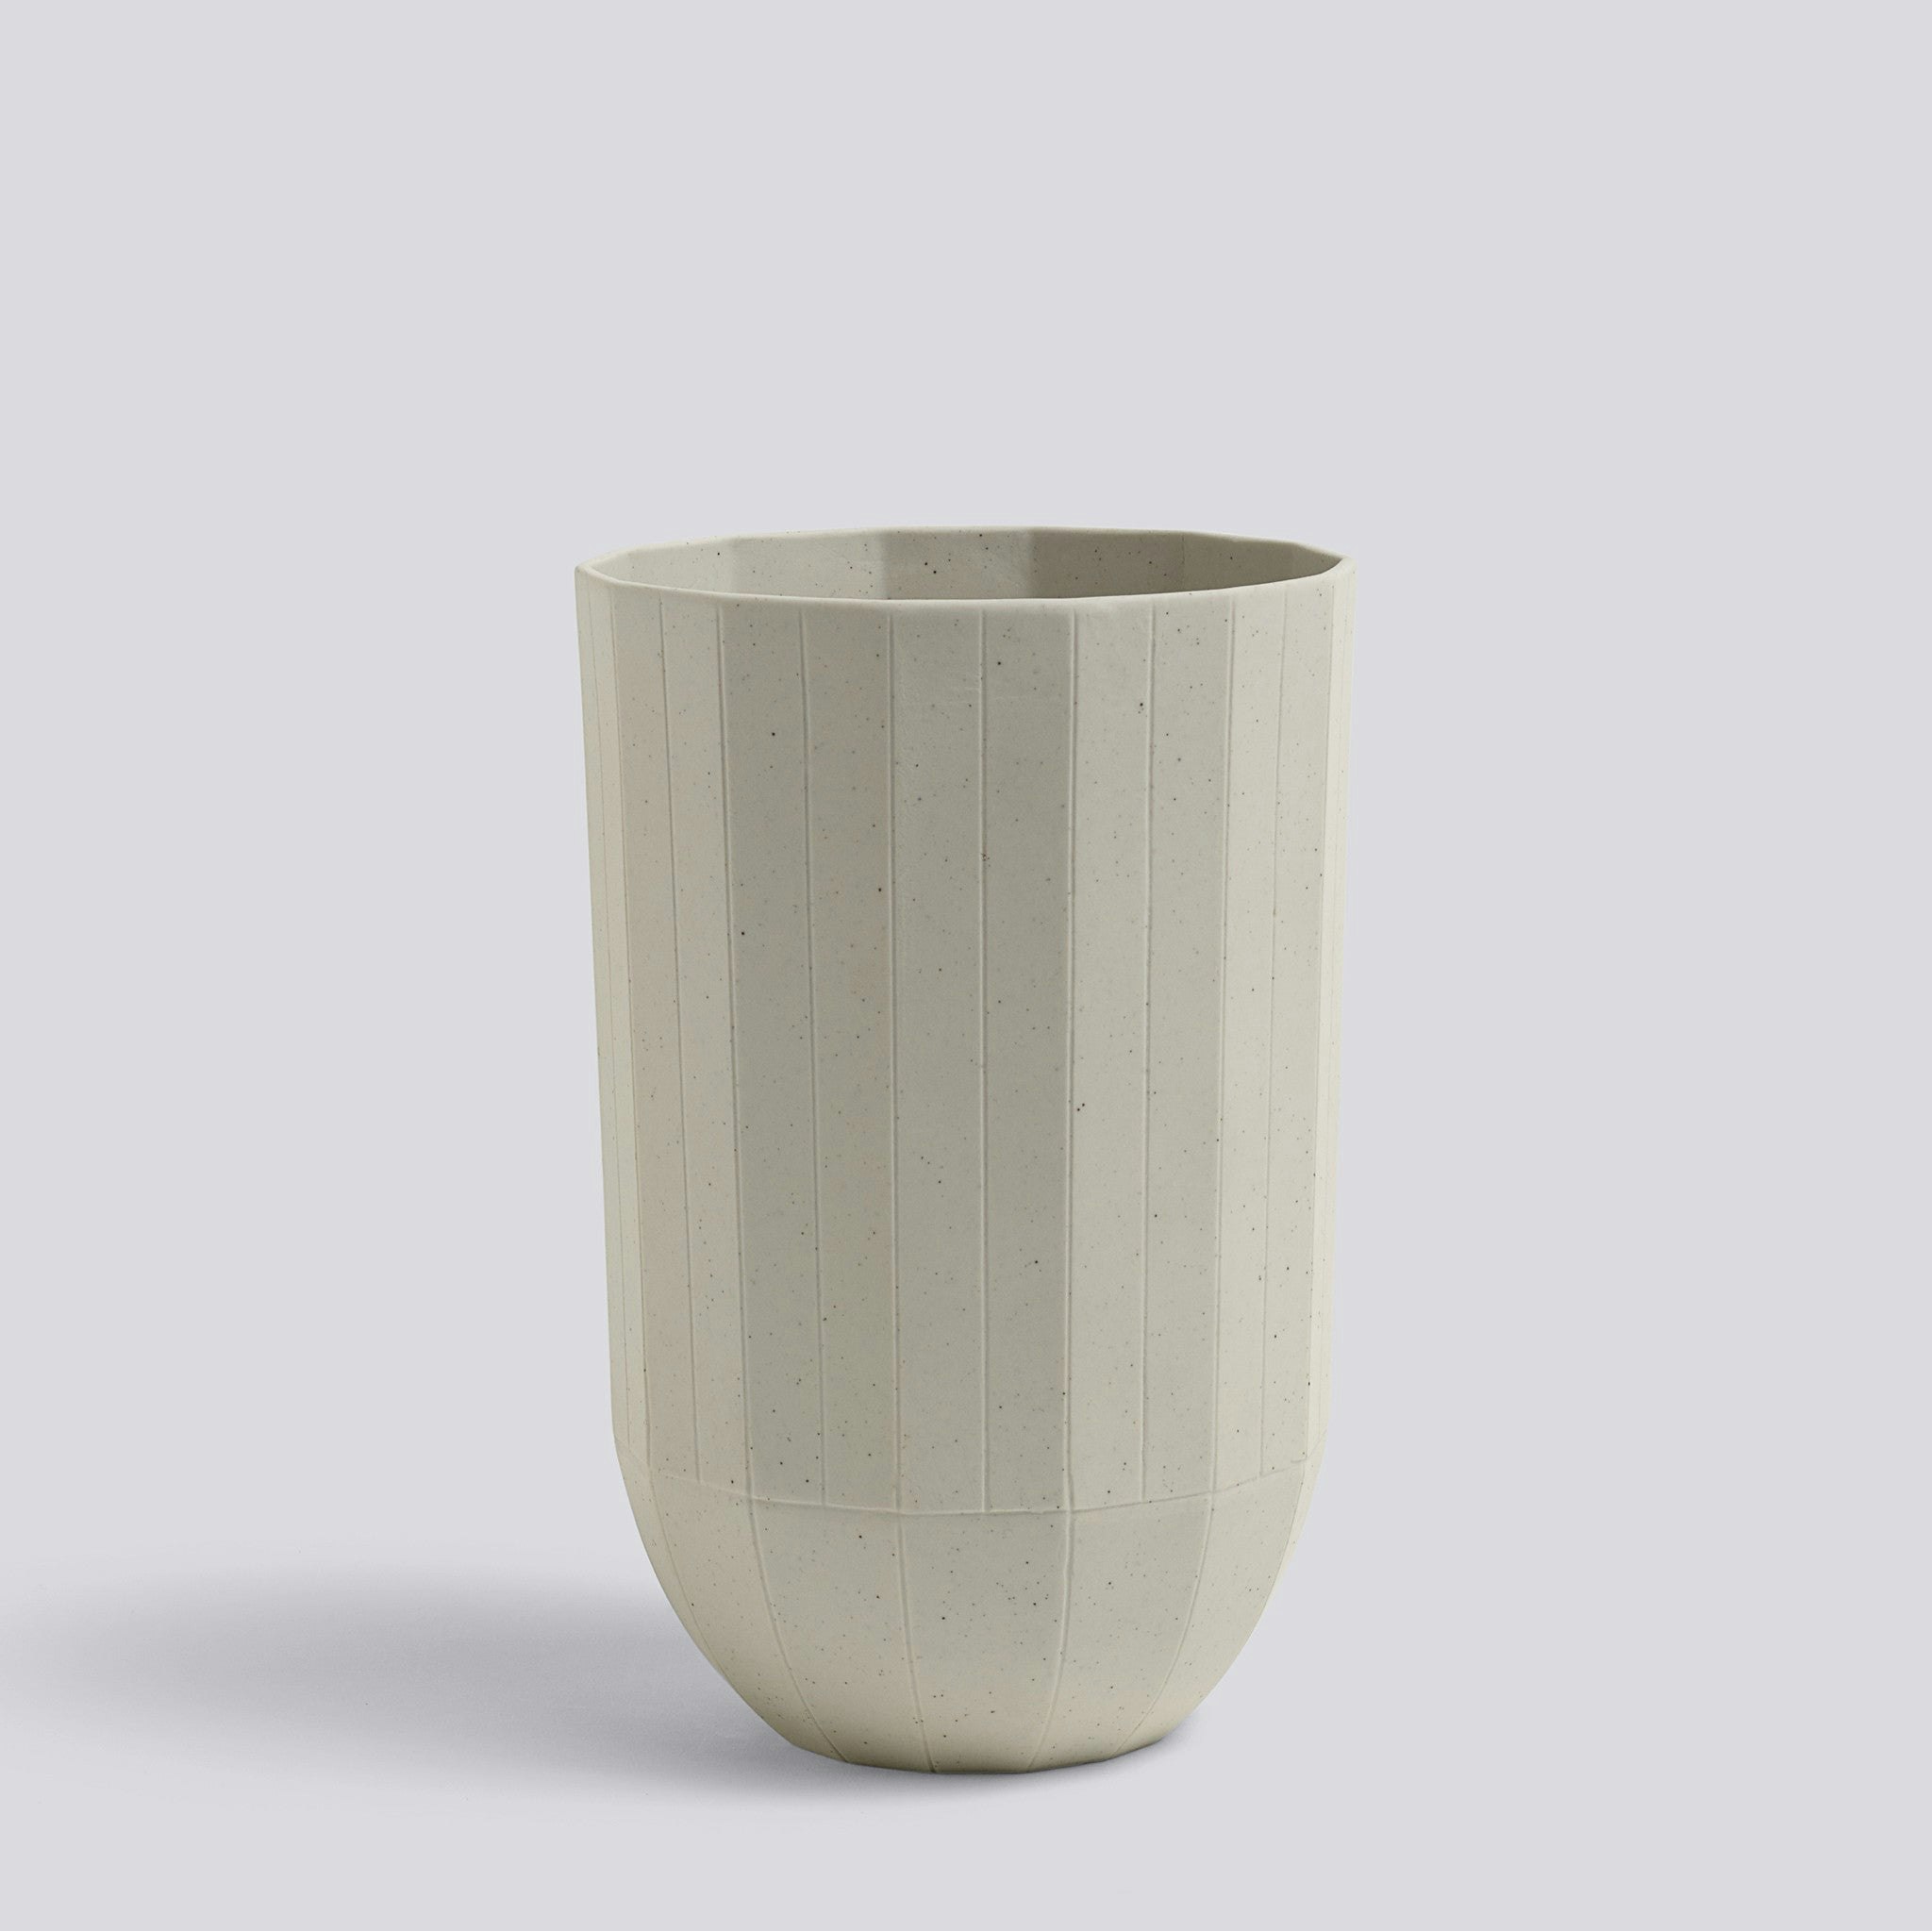 Paper Porcelain Vase by Hay